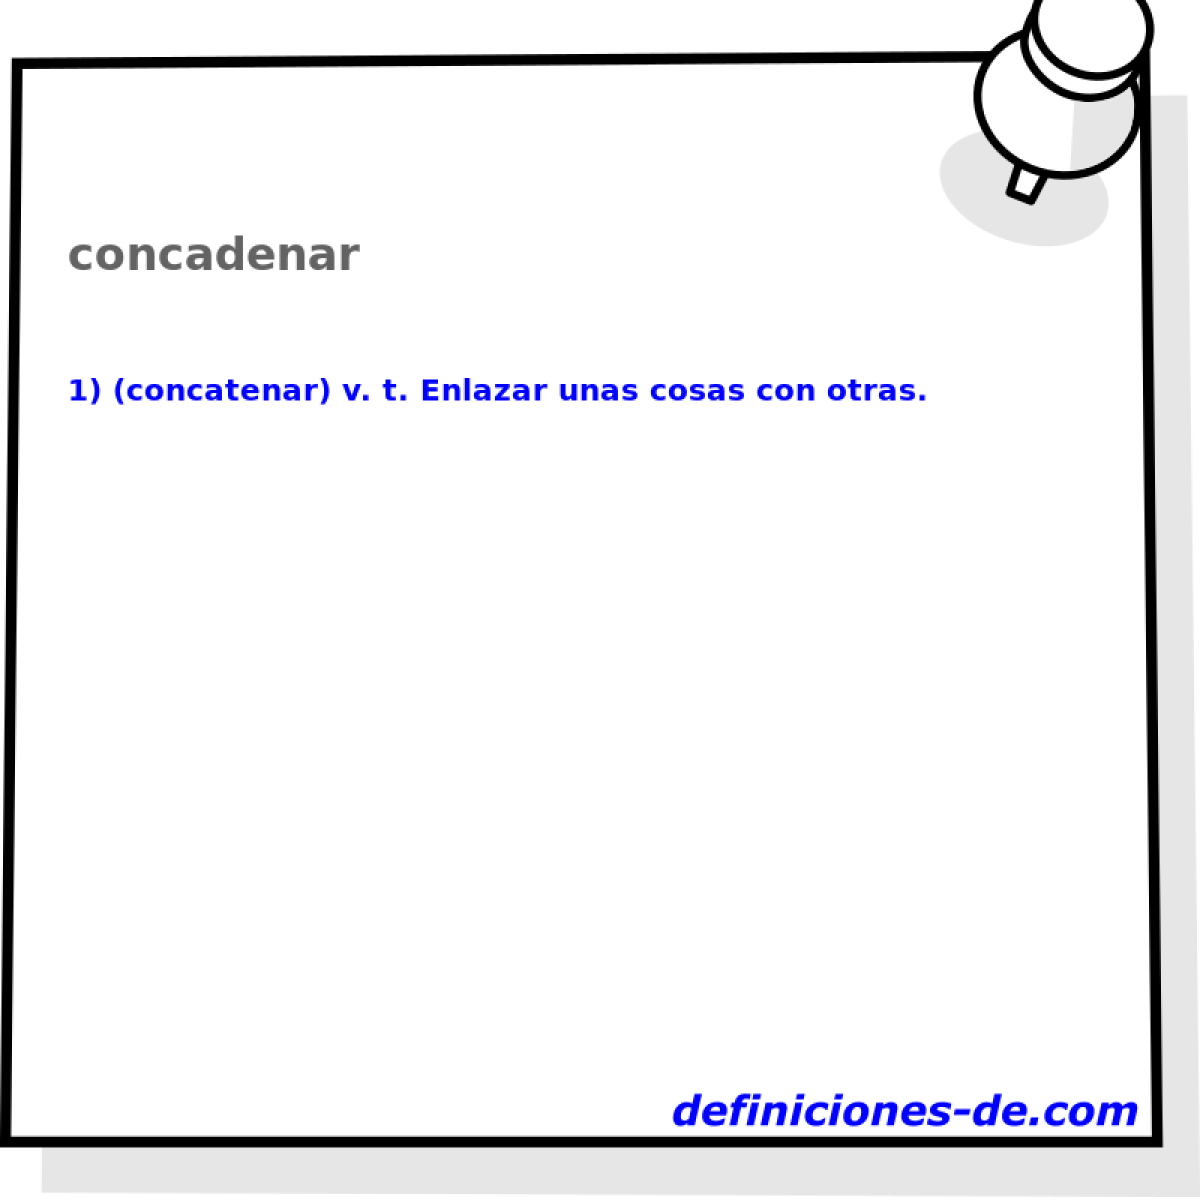 concadenar 